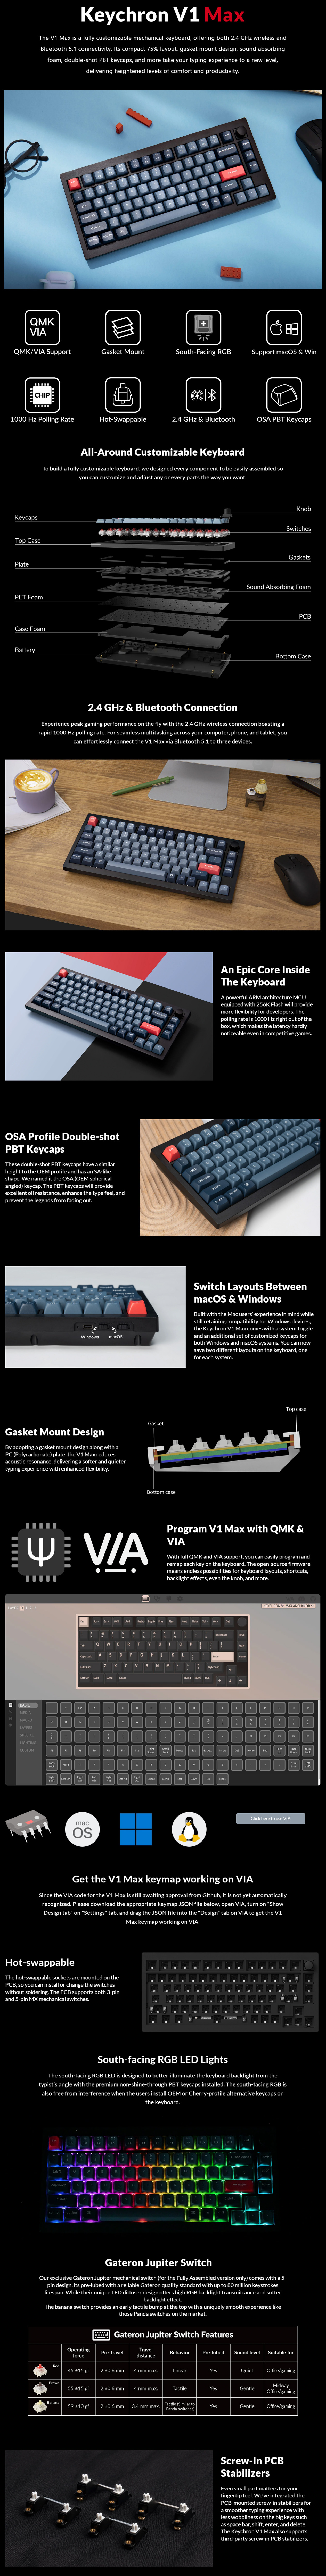 Keyboards-Keychron-V1-MAX-75-Full-Assembled-Knob-RGB-Hot-Swap-Wireless-QMK-Custom-Keyboard-Gateron-Jupiter-Red-Switch-KBKCV1MD1-1